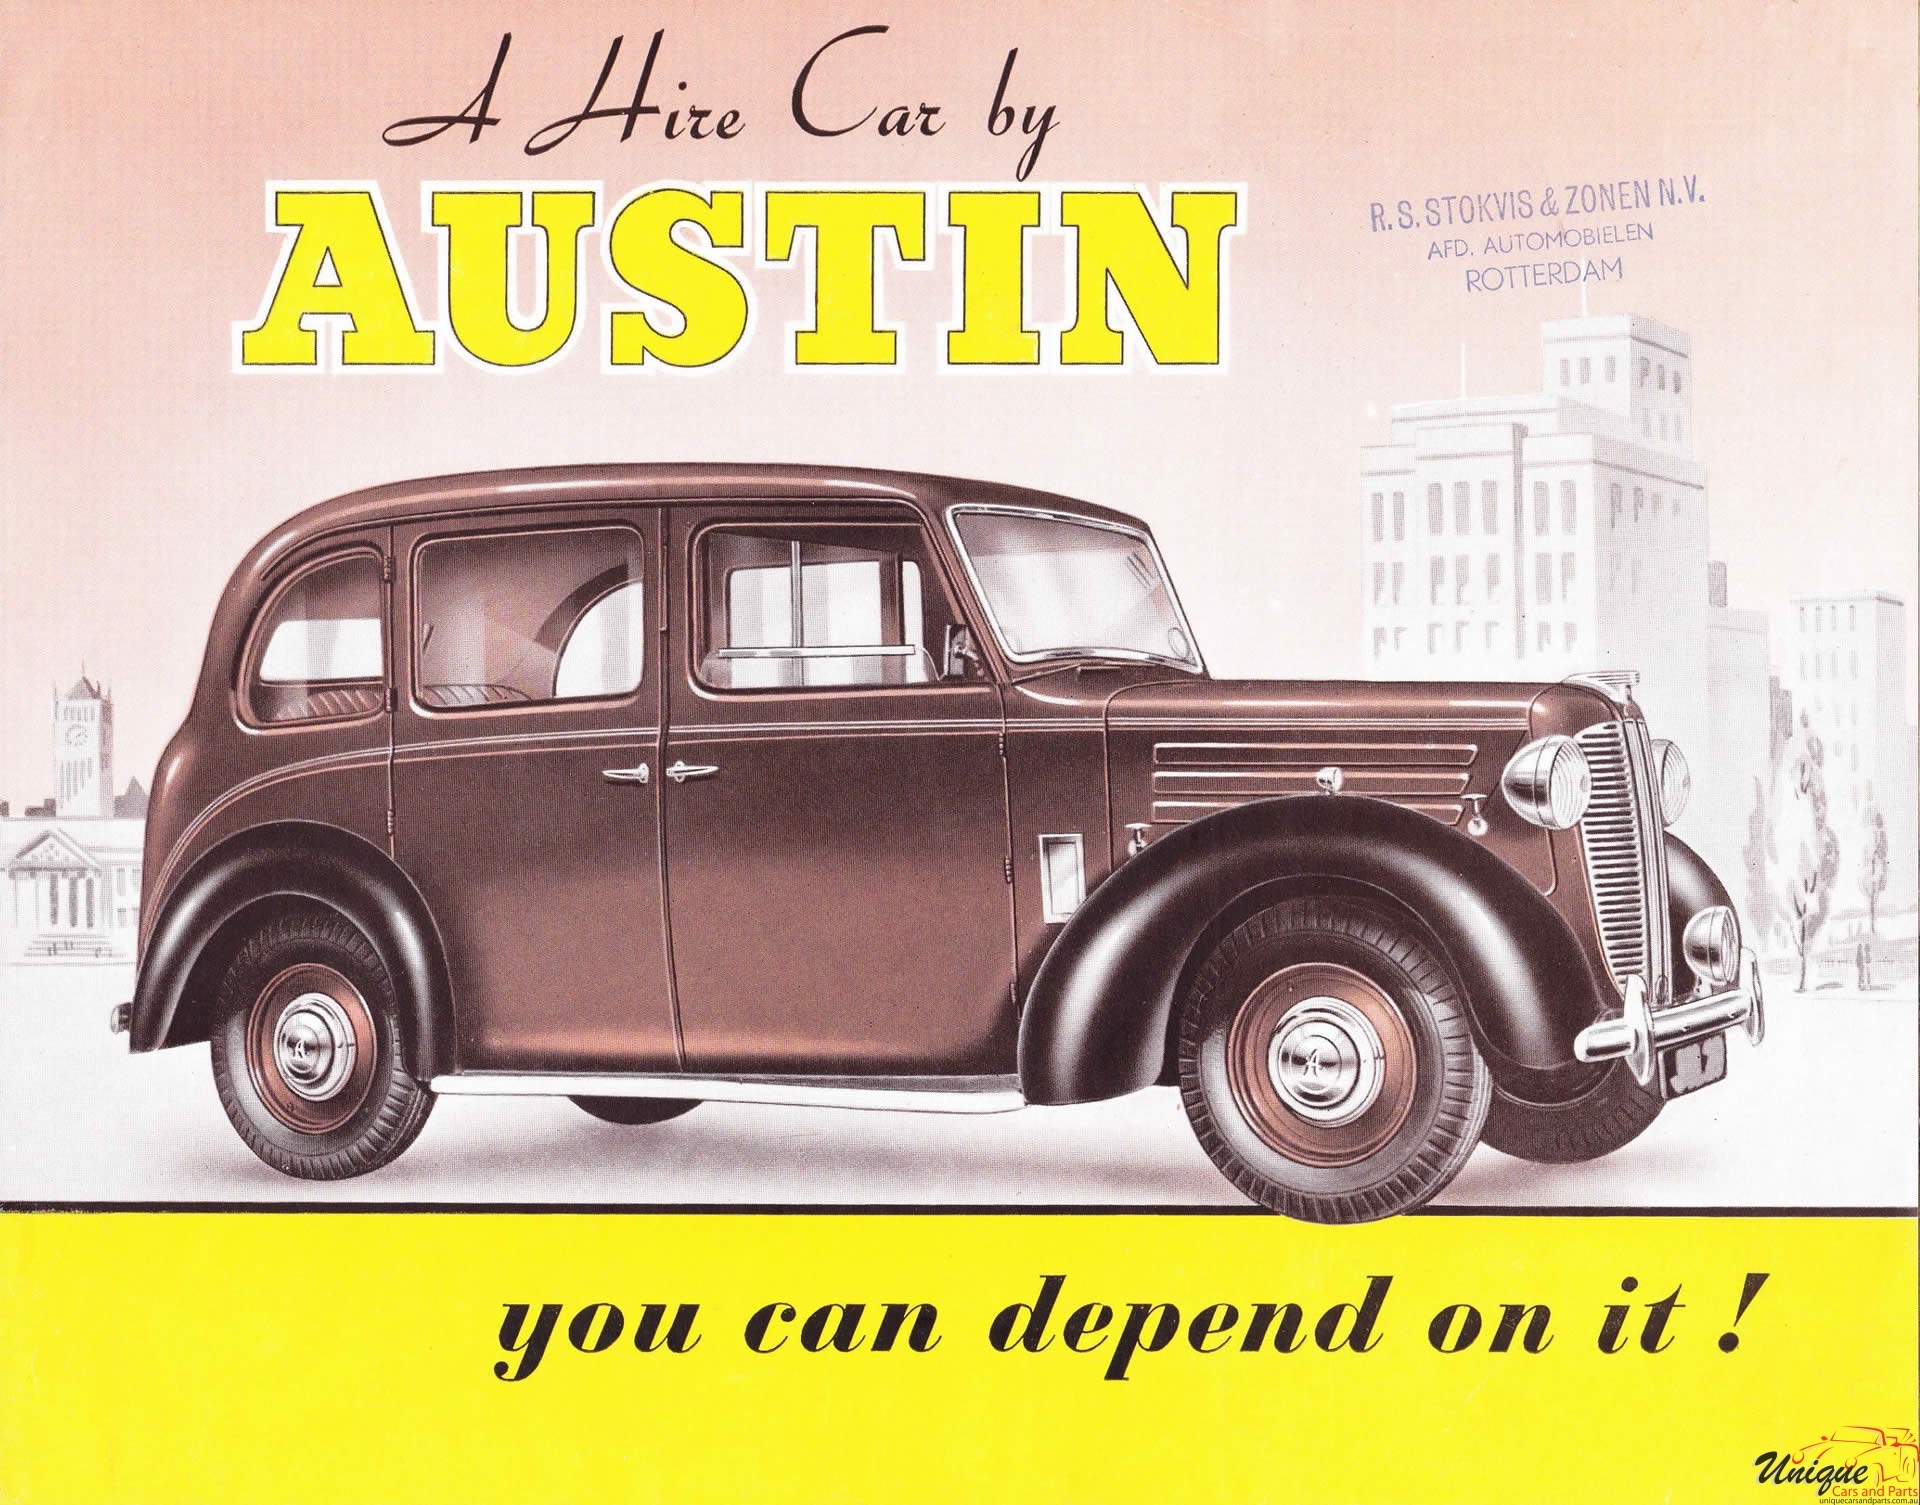 1951 Austin FX Hire-Car Brochure